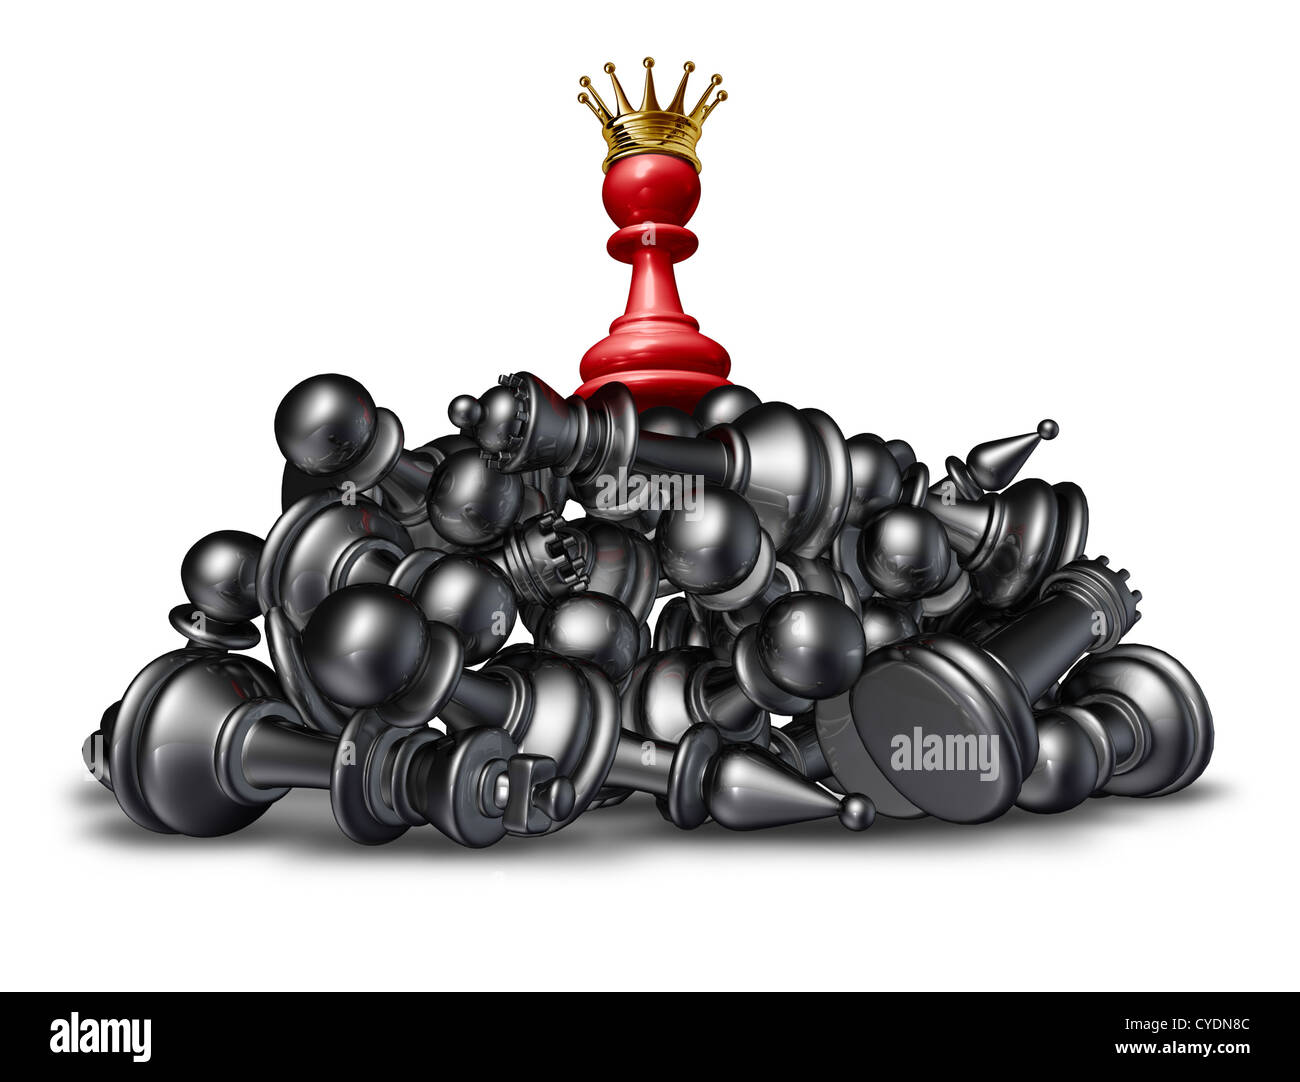 Der Gewinner und der Victor-Erfolgskonzept mit roten Schach Bauer trägt eine goldene Krone auf einem Berg besiegt Konkurrenten, die vor einem weißen Hintergrund sich hinlegen. Stockfoto